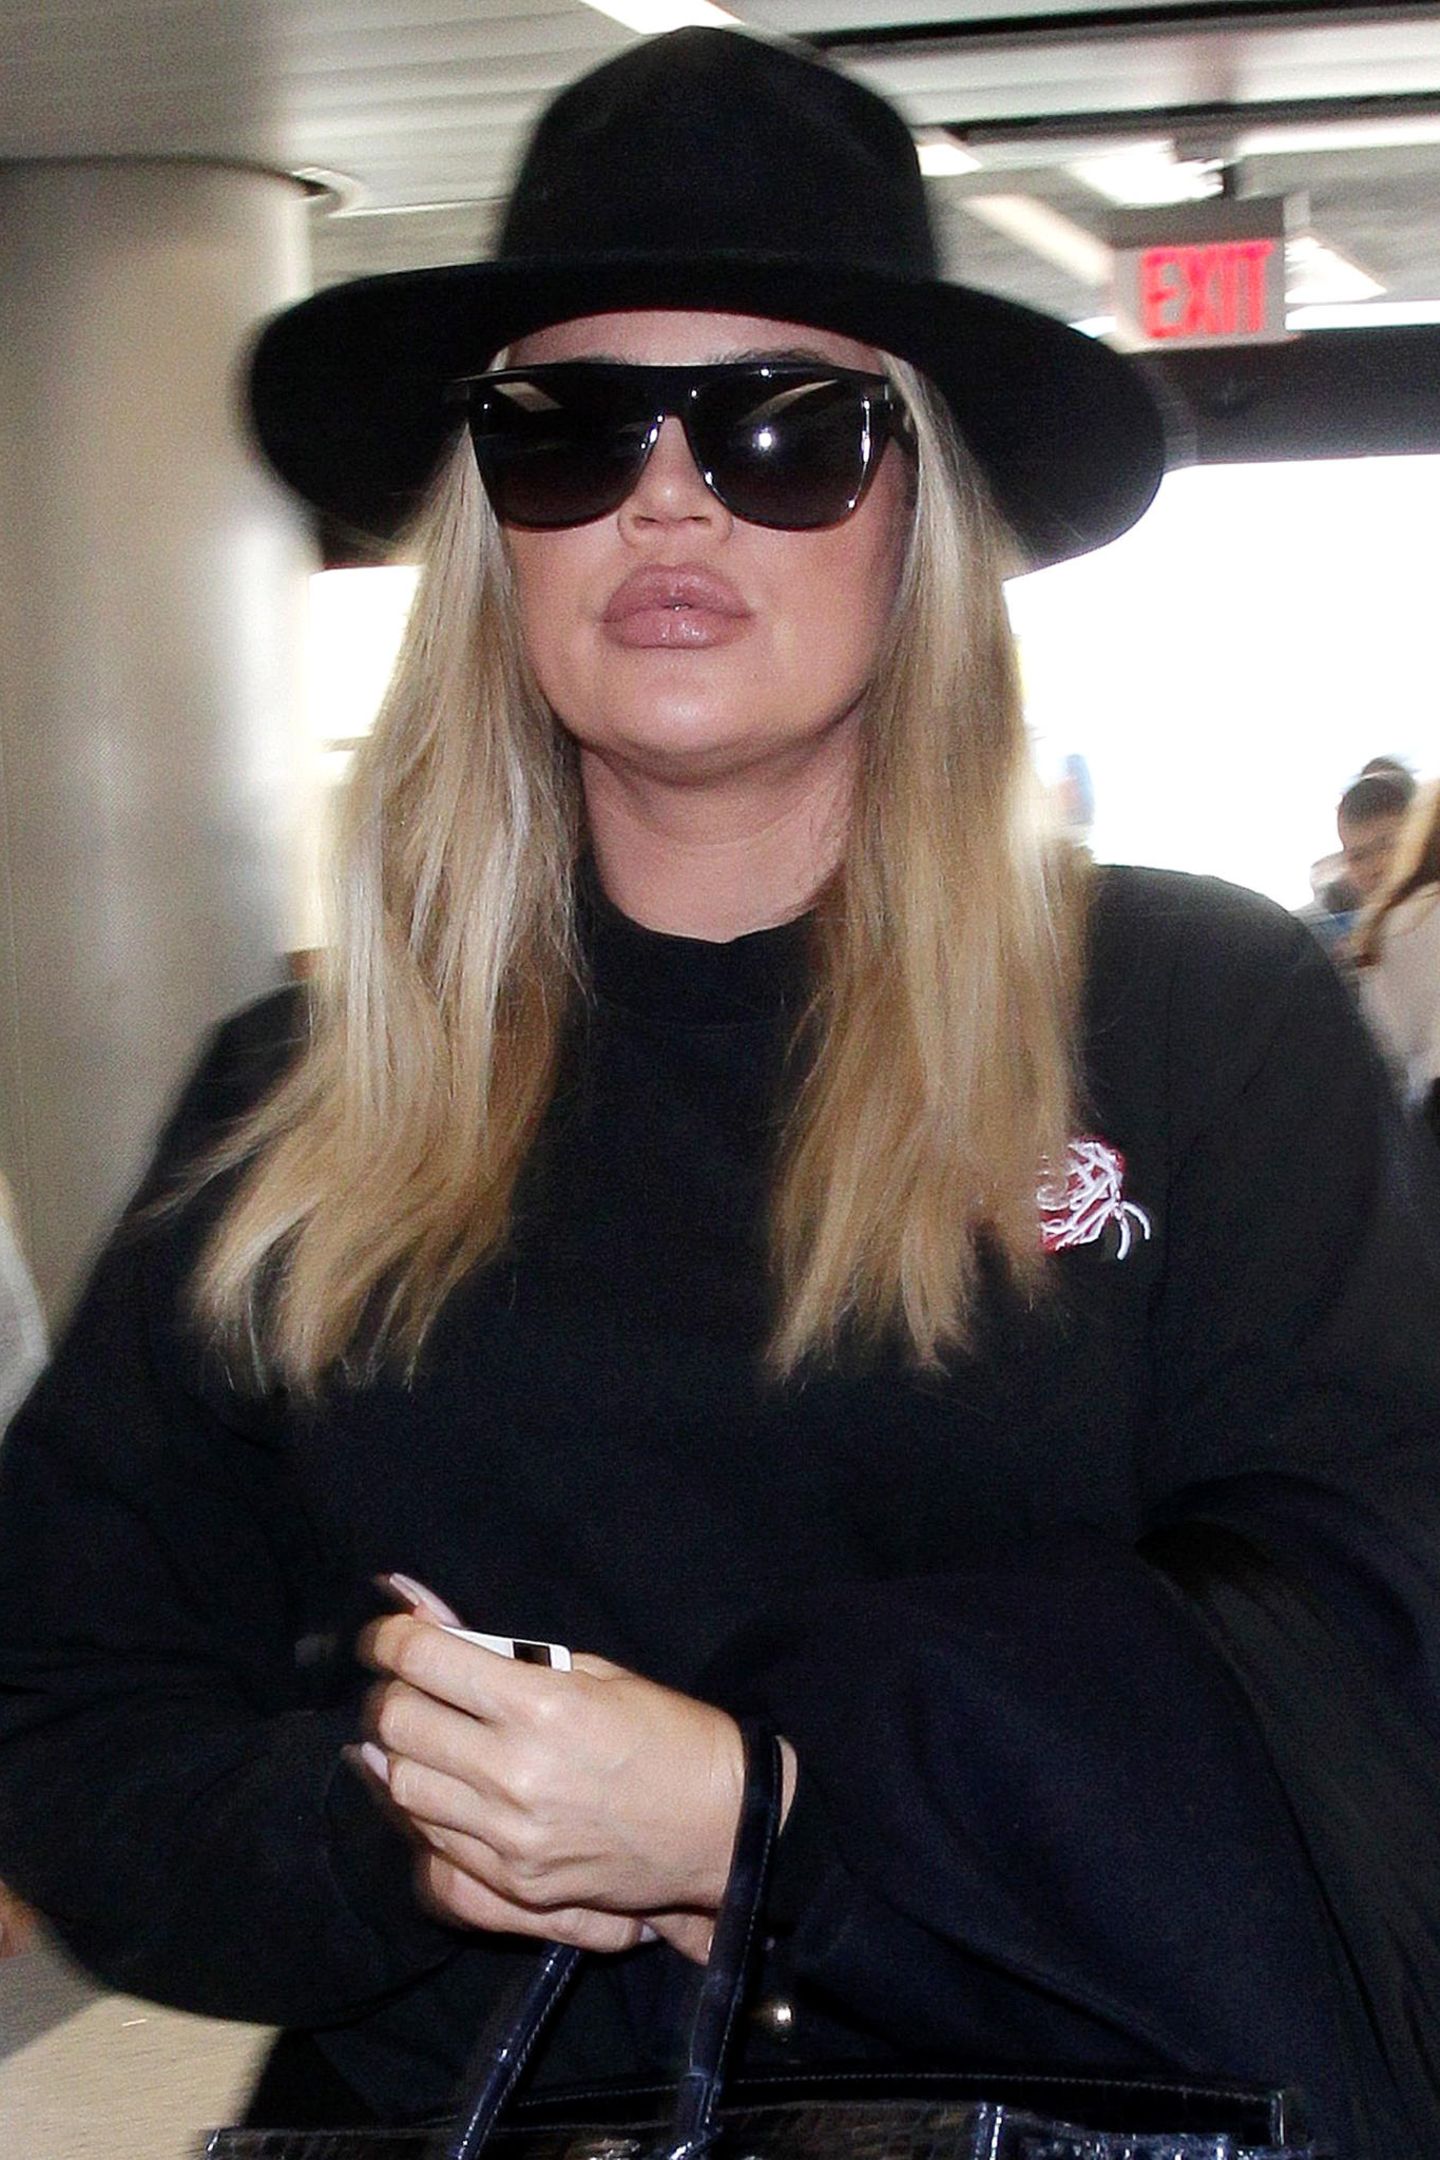 Anfang 2018 ist Khloé Kardashian plötzlich mit sehr voluminösen Lippen unterwegs. Auch wenn sie versucht, möglichst unerkannt zu reisen, fällt der Mund doch sehr auf. Dafür hat sie einige Monate später jedoch eine "Erklärung".